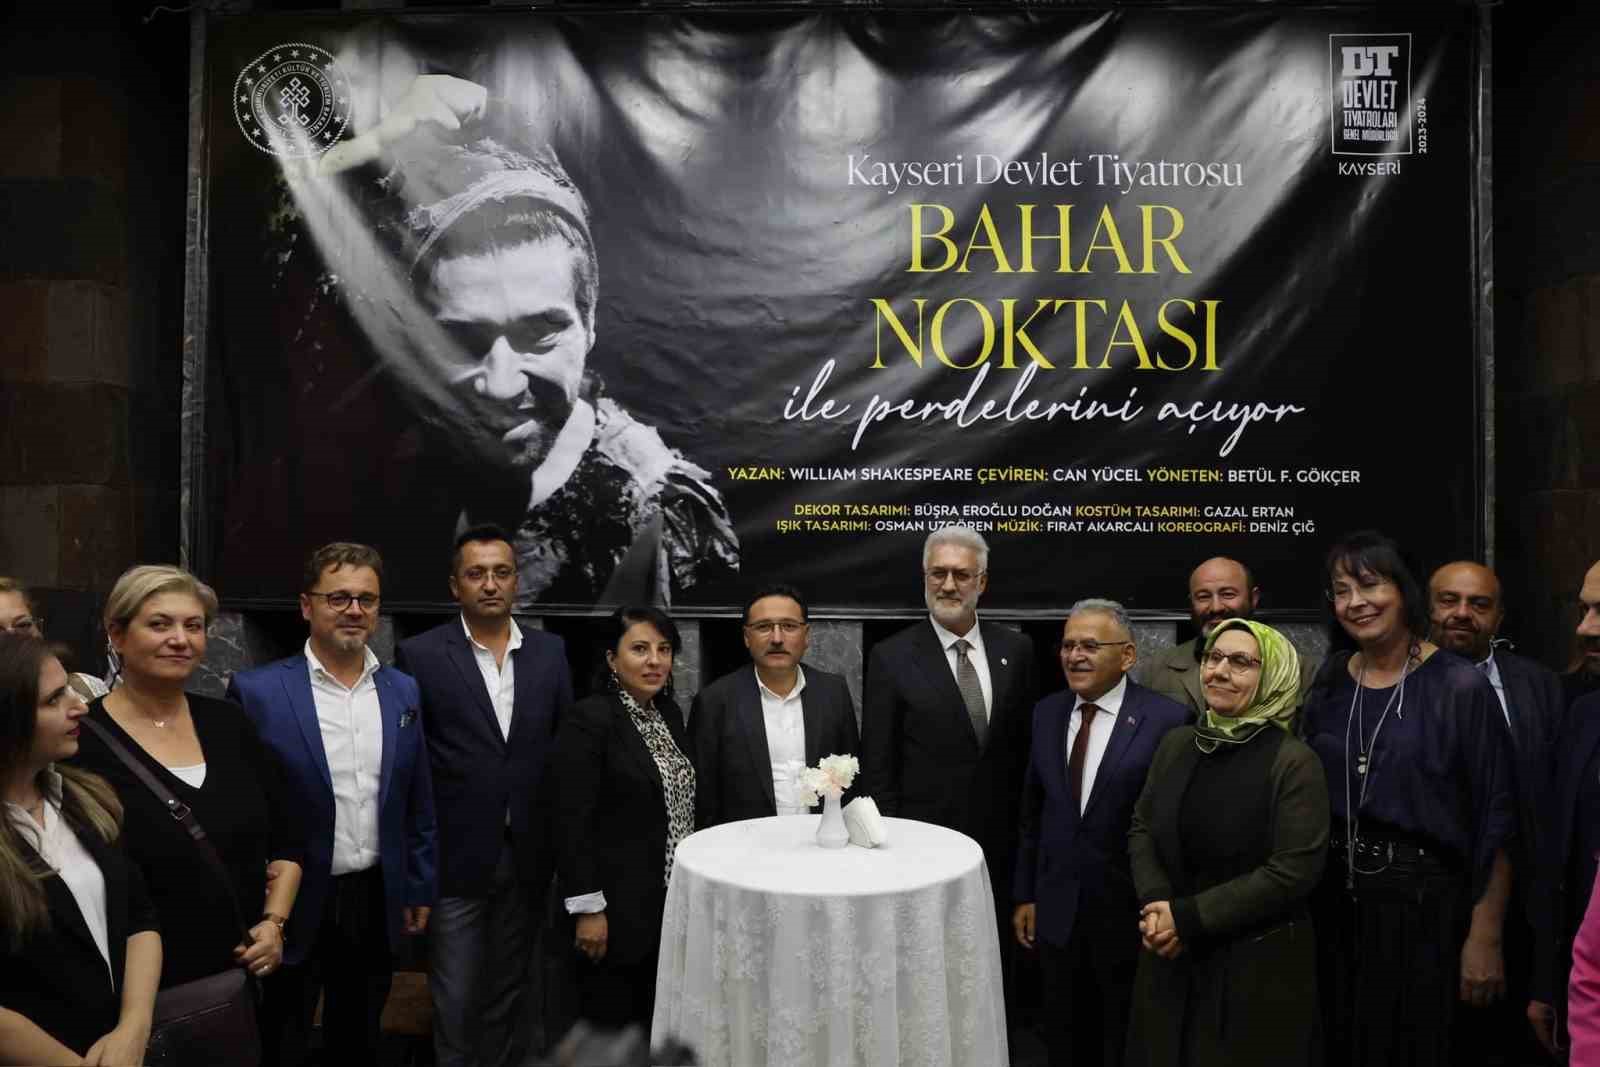 Kayseri Devlet Tiyatrosu muhteşem bir açılışla "perde" dedi
